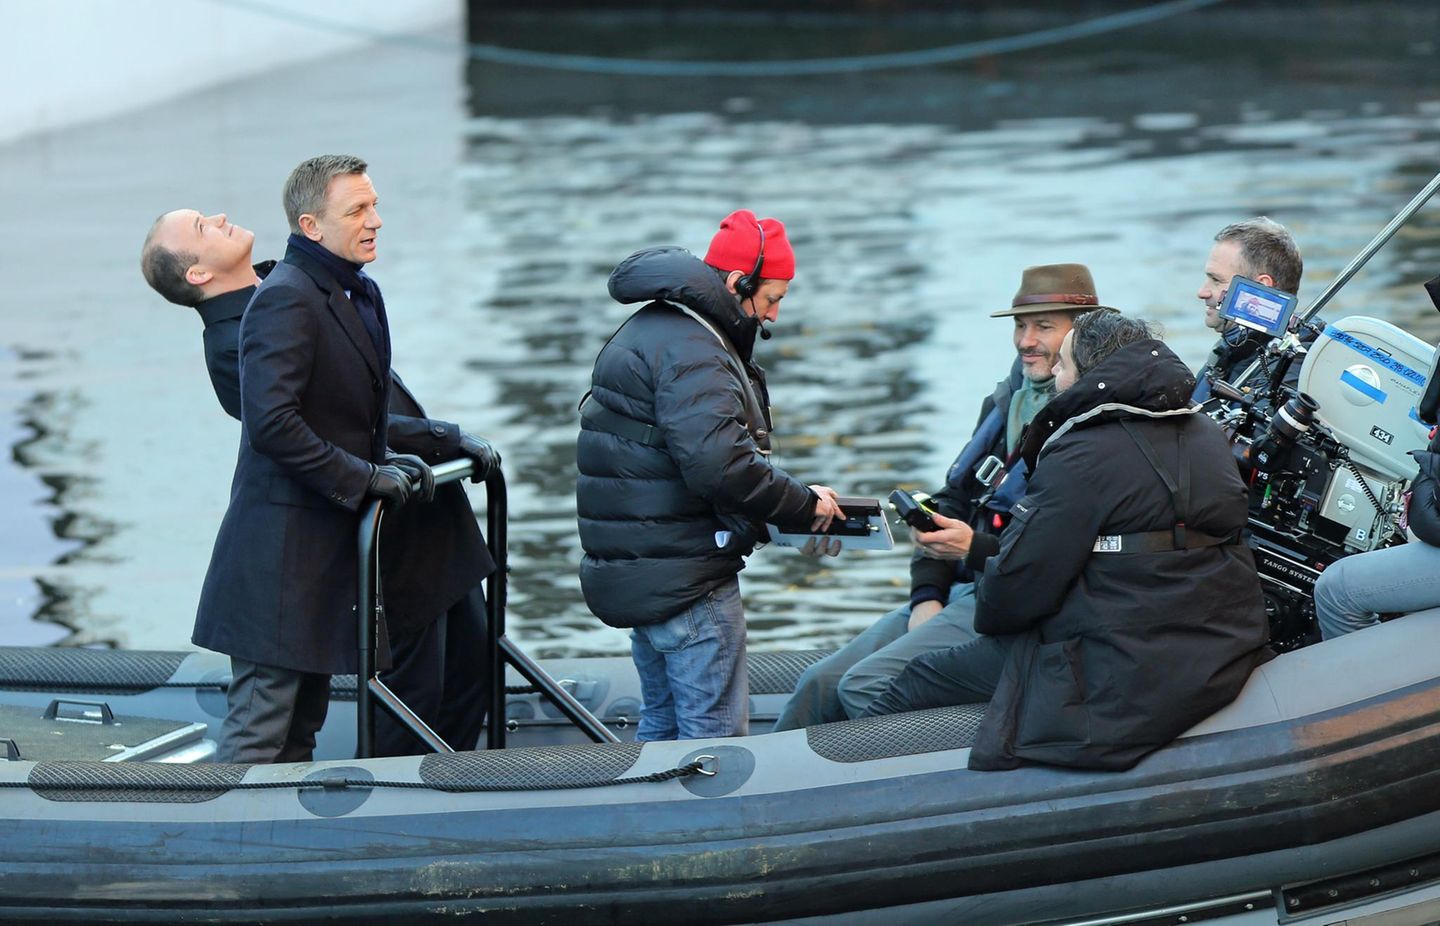 16. Dezember 2014: Natürlich handelt es sich hier um den neuen James Bond Film "Spectre". Wir sind gespannt was Daniel Craig uns diesmal zu bieten hat.